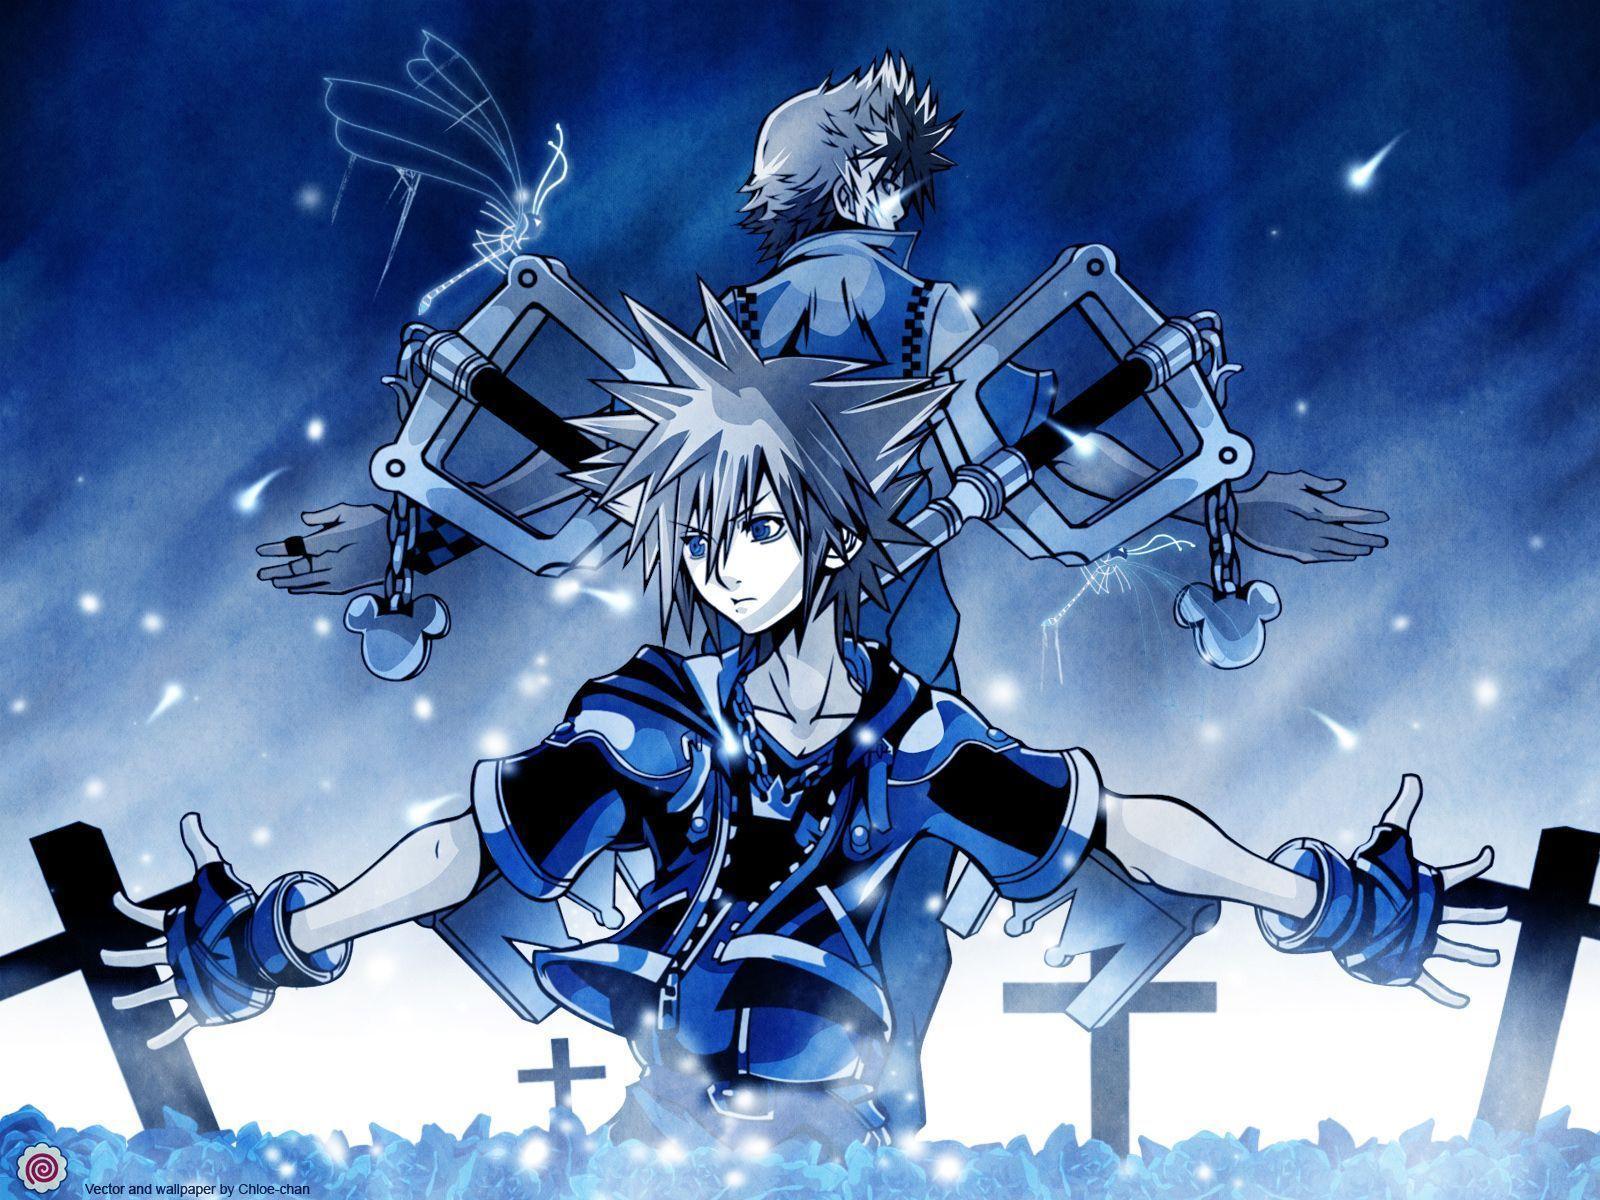 Kingdom Hearts Sora Wallpaper HD Image & Picture